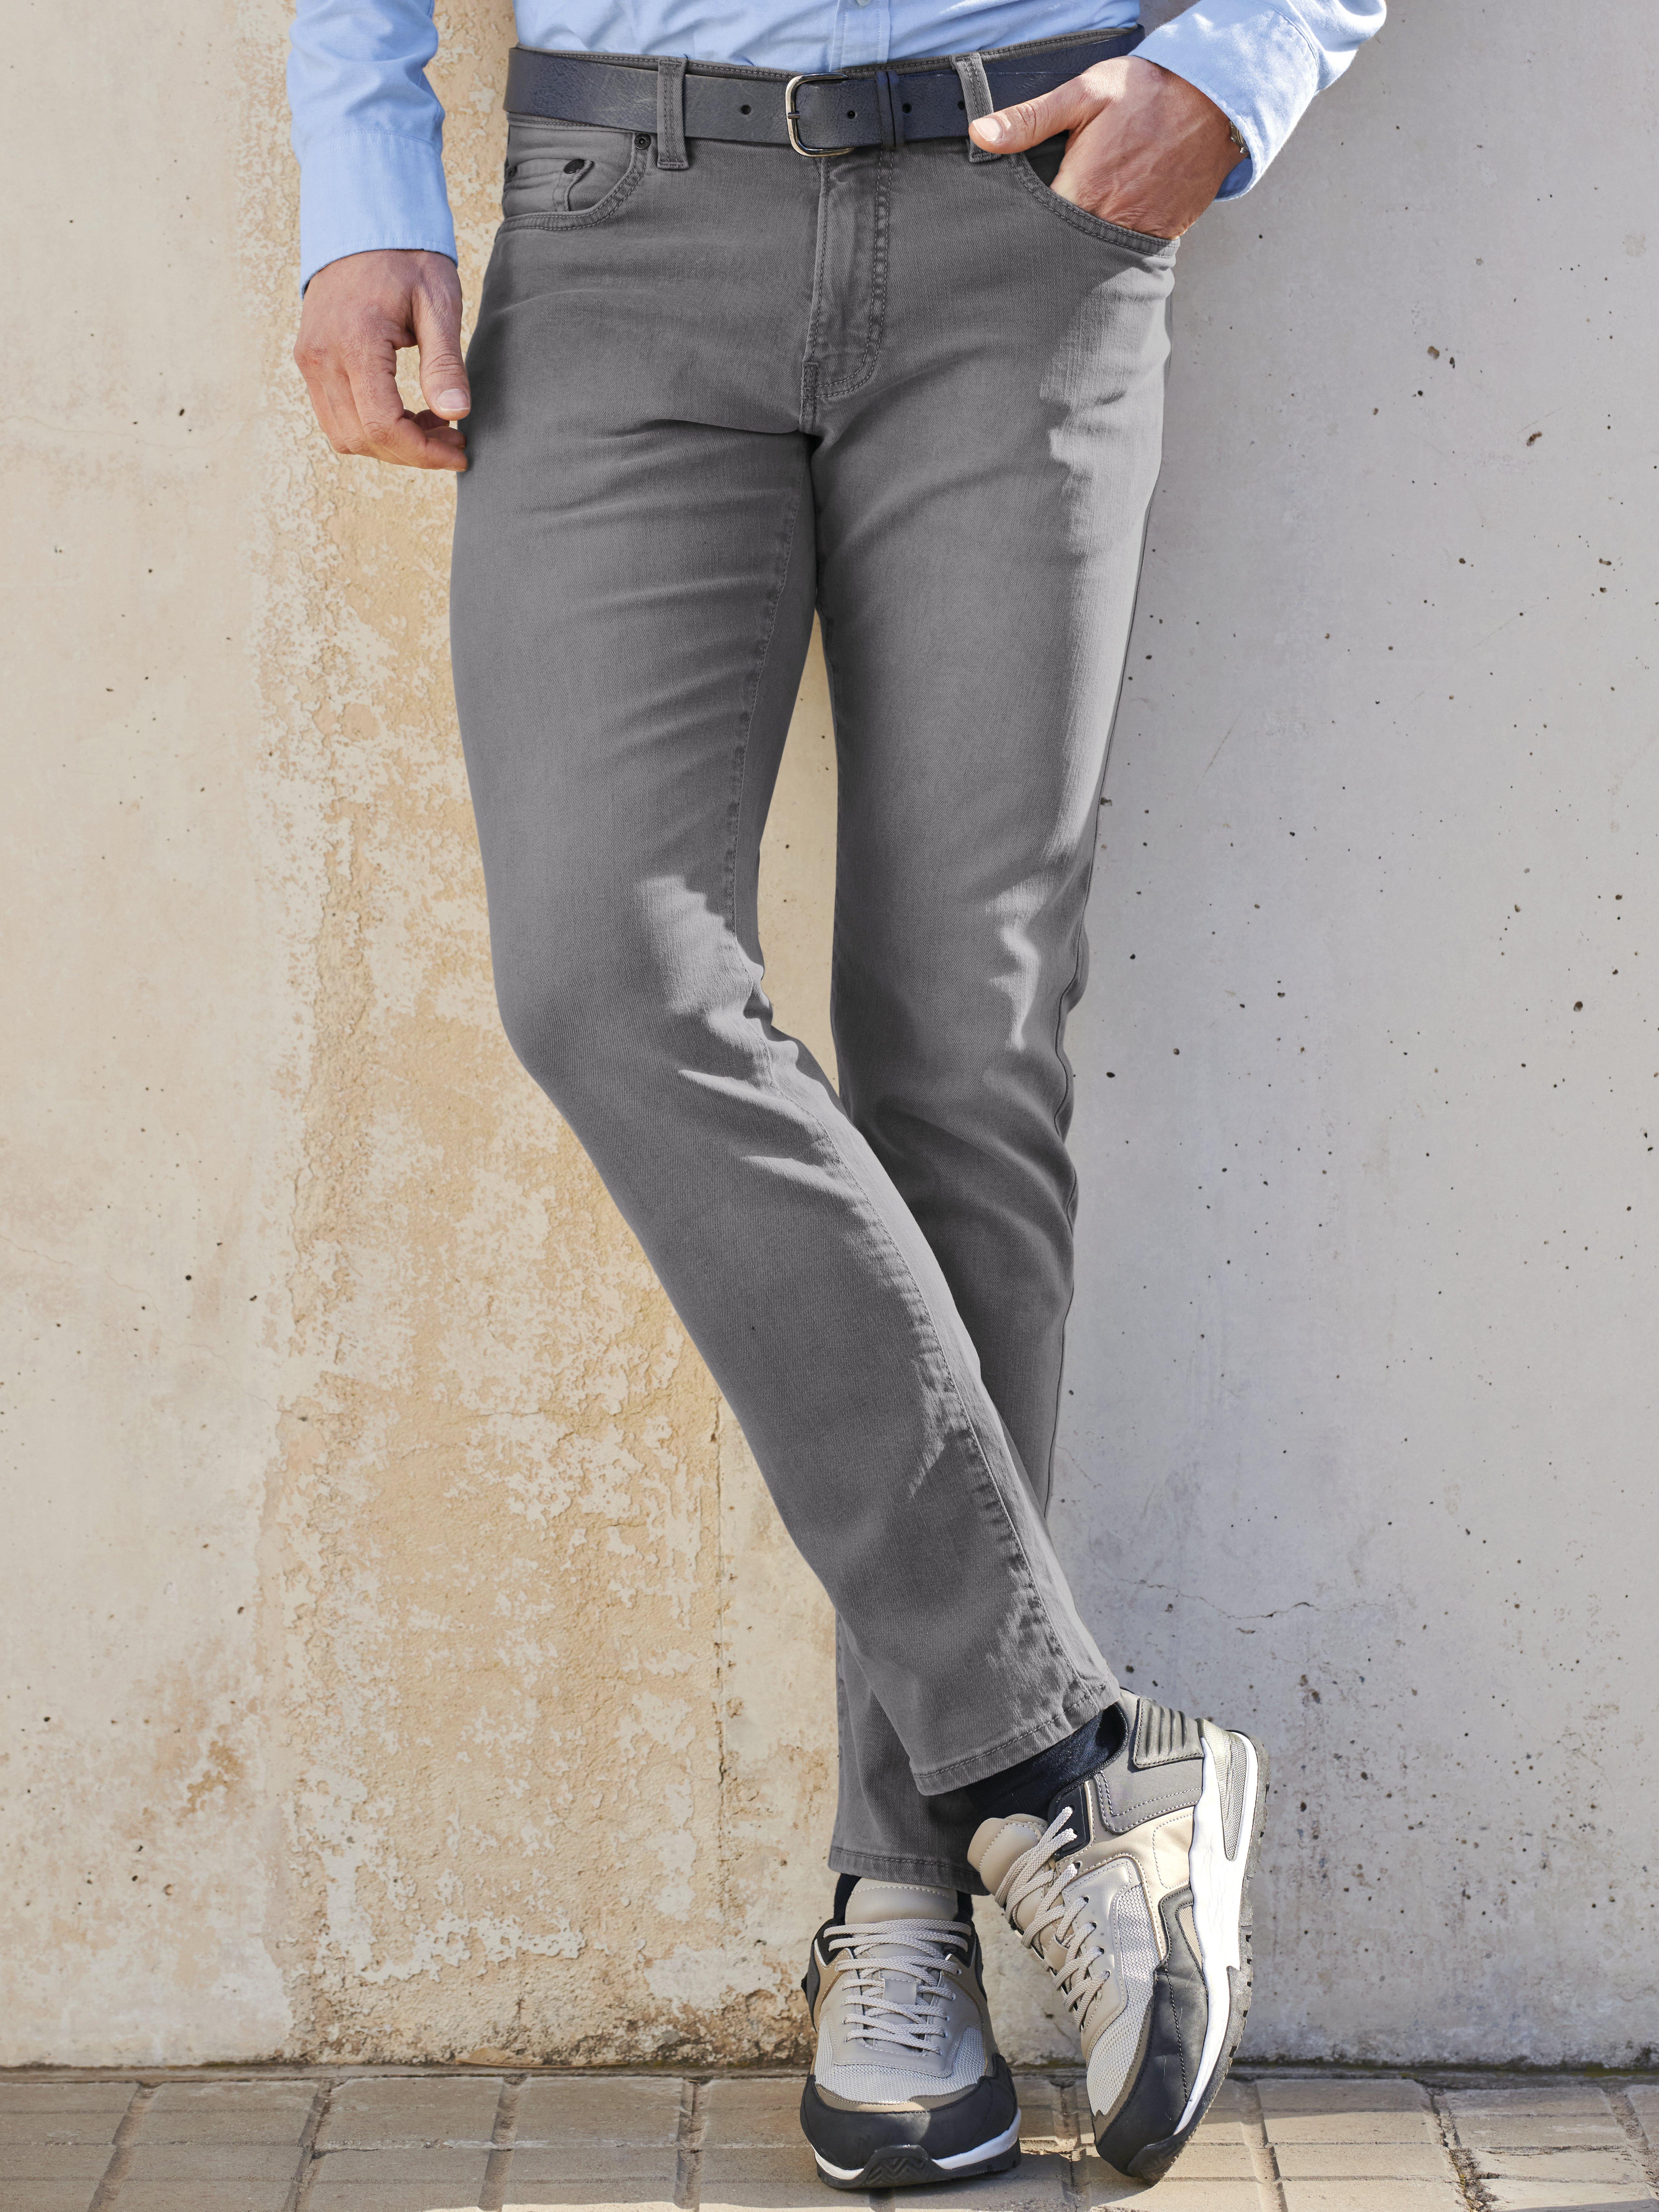 auditie Boost tabak Pierre Cardin - Jeans model Lyon Tapered - lichtgrijs